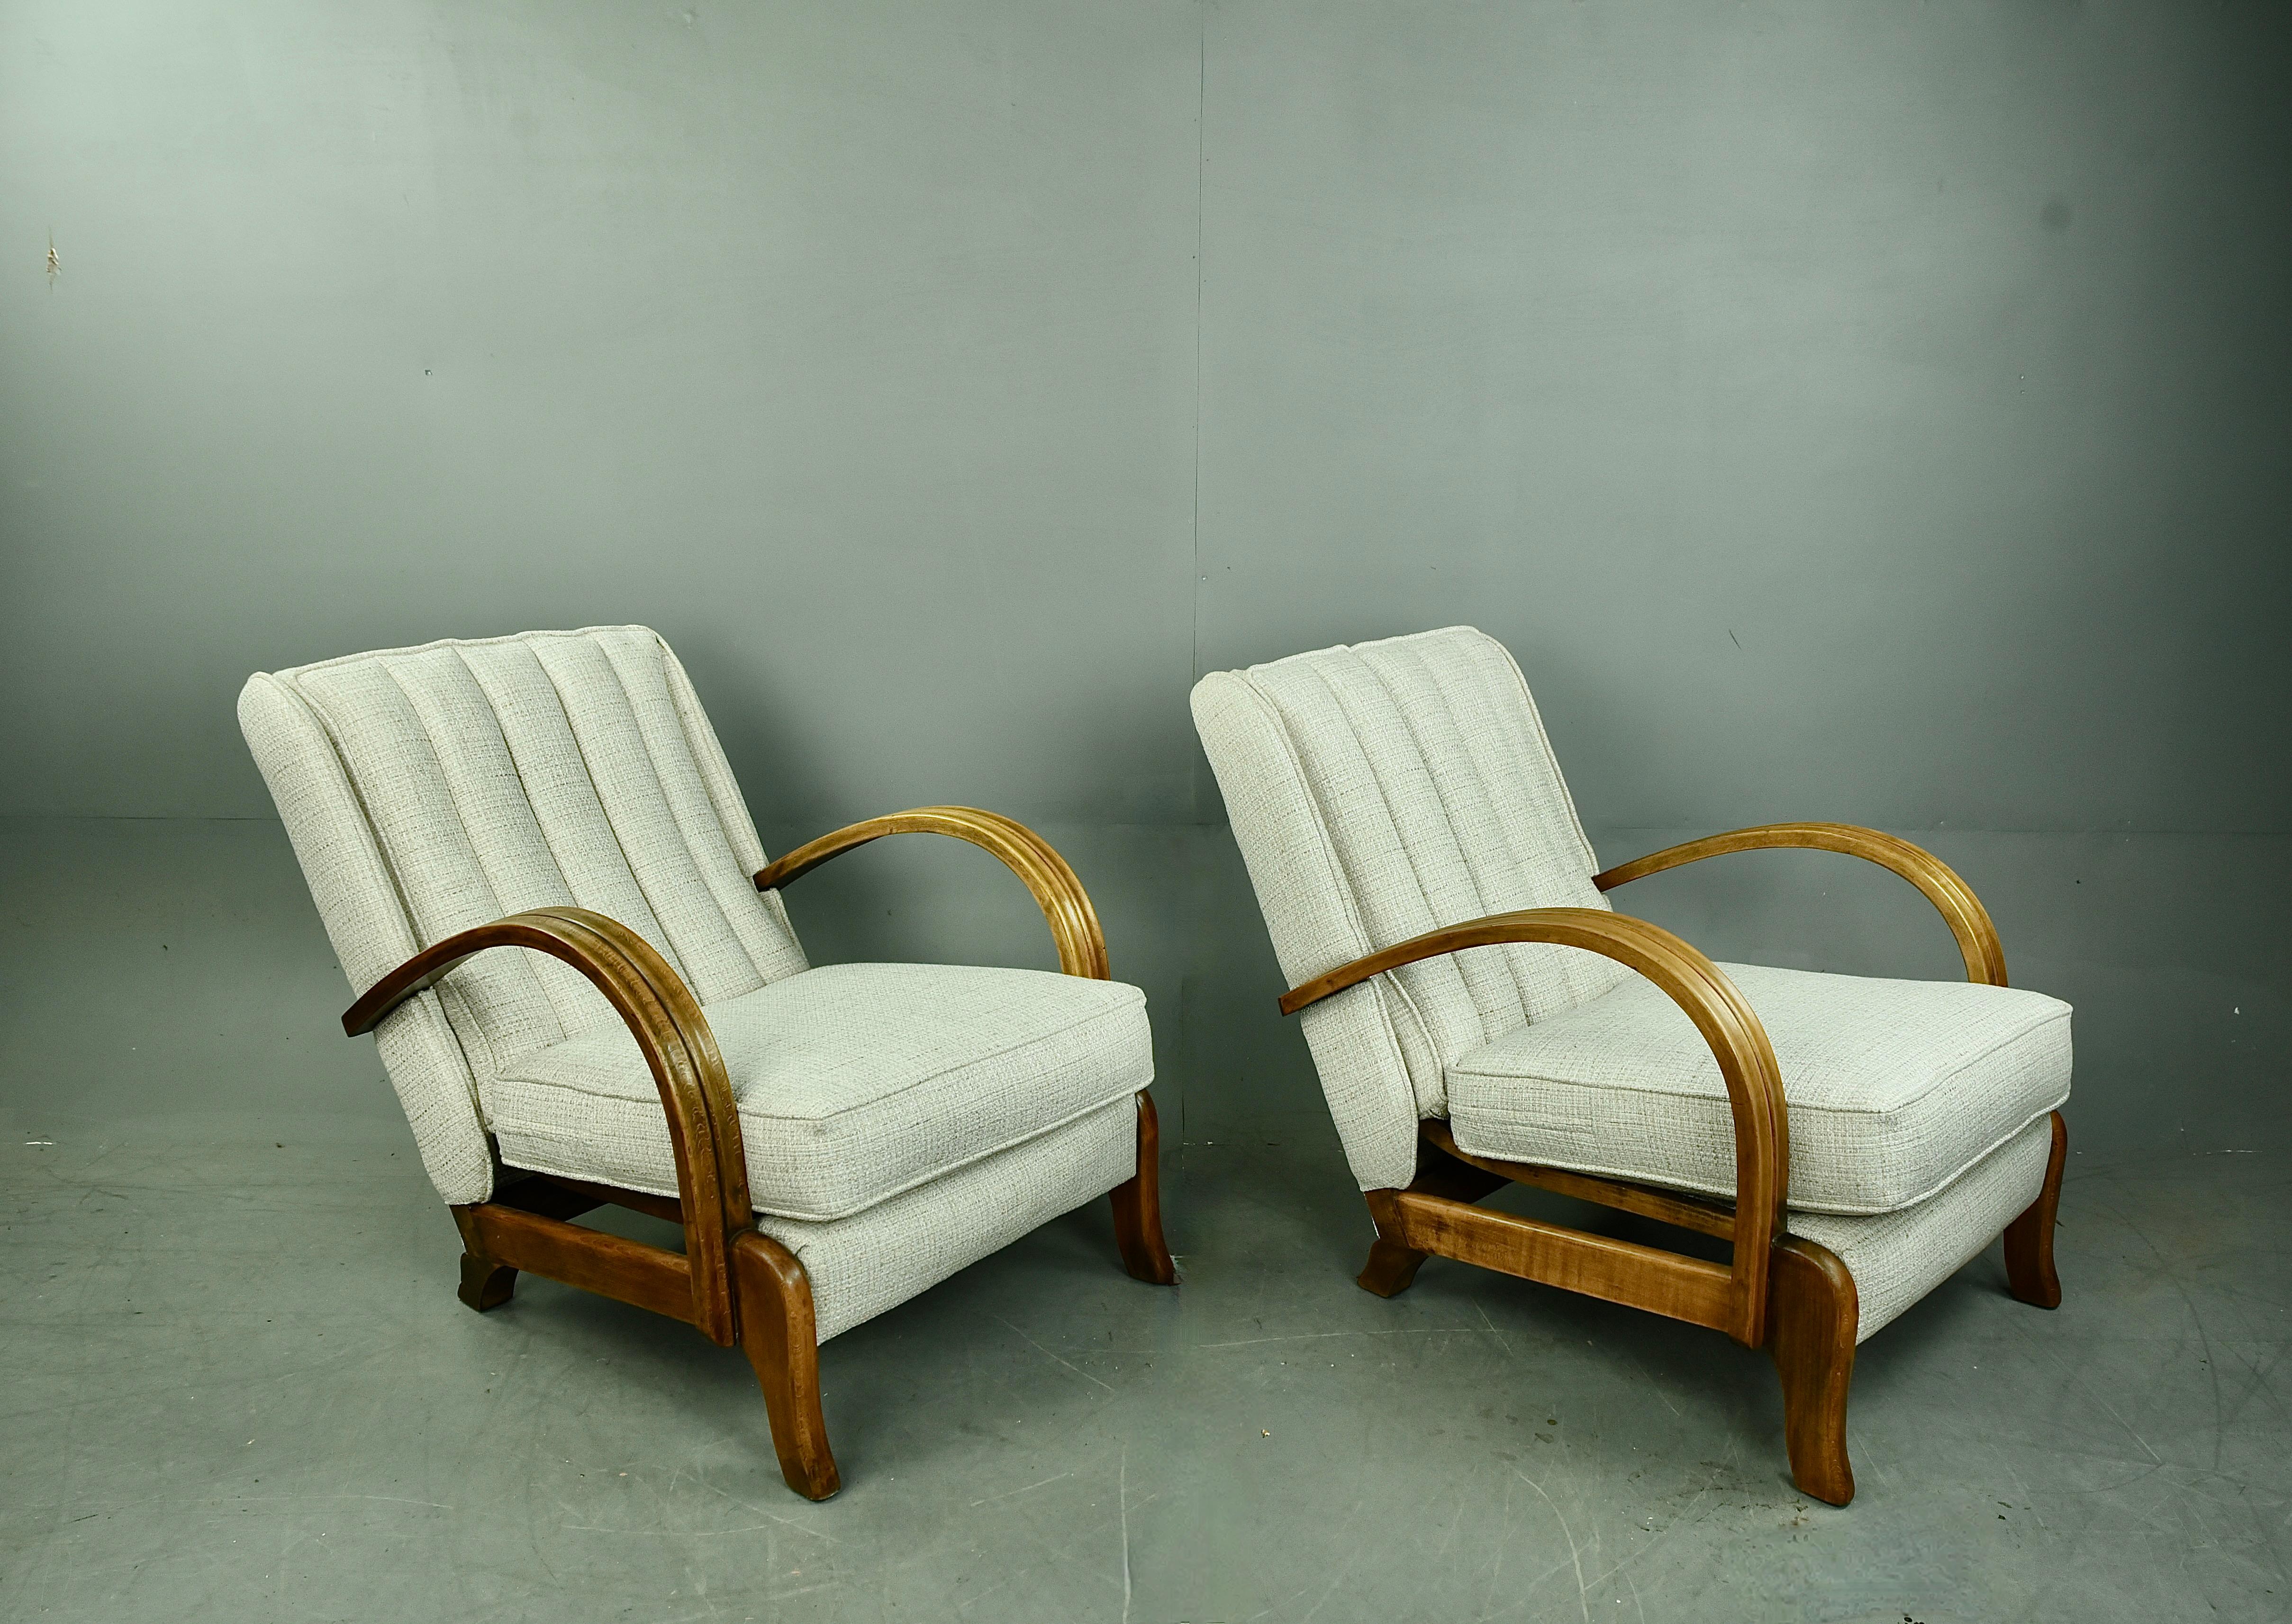 Très rare paire de chaises longues du milieu du siècle dernier de S.A & S Ltd Leigh on sea Essex .
Les chaises sont uniques dans leur construction avec une base et des dossiers à ressorts flottants. Elles ont des accoudoirs en hêtre massif Beeche